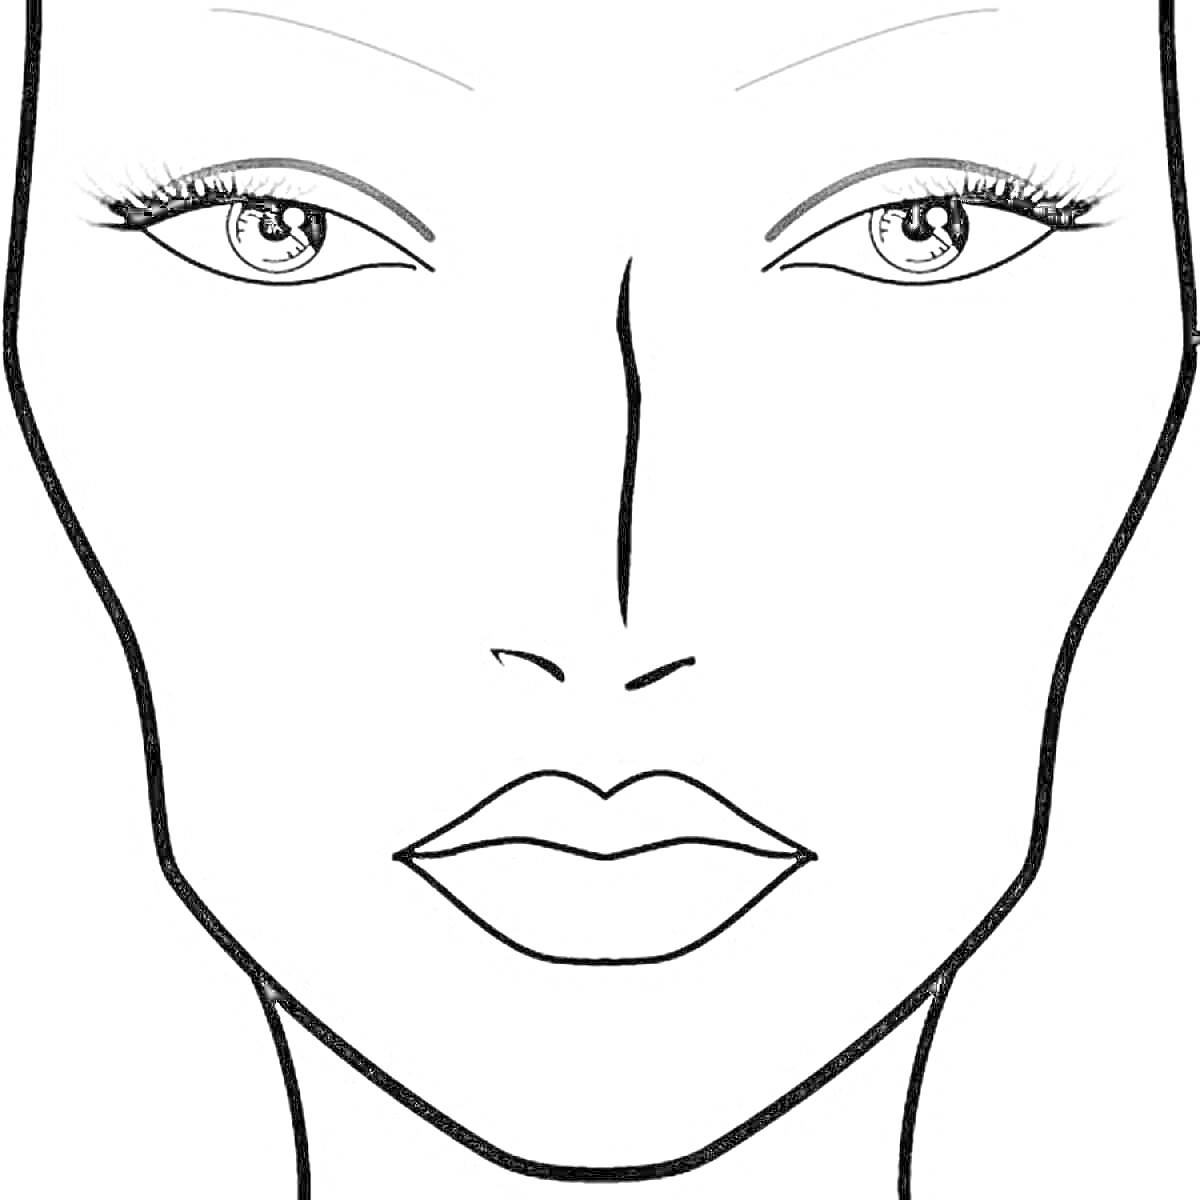 Раскраска Шаблон для макияжа с женским лицом, глаза с ресницами, брови, нос и губы